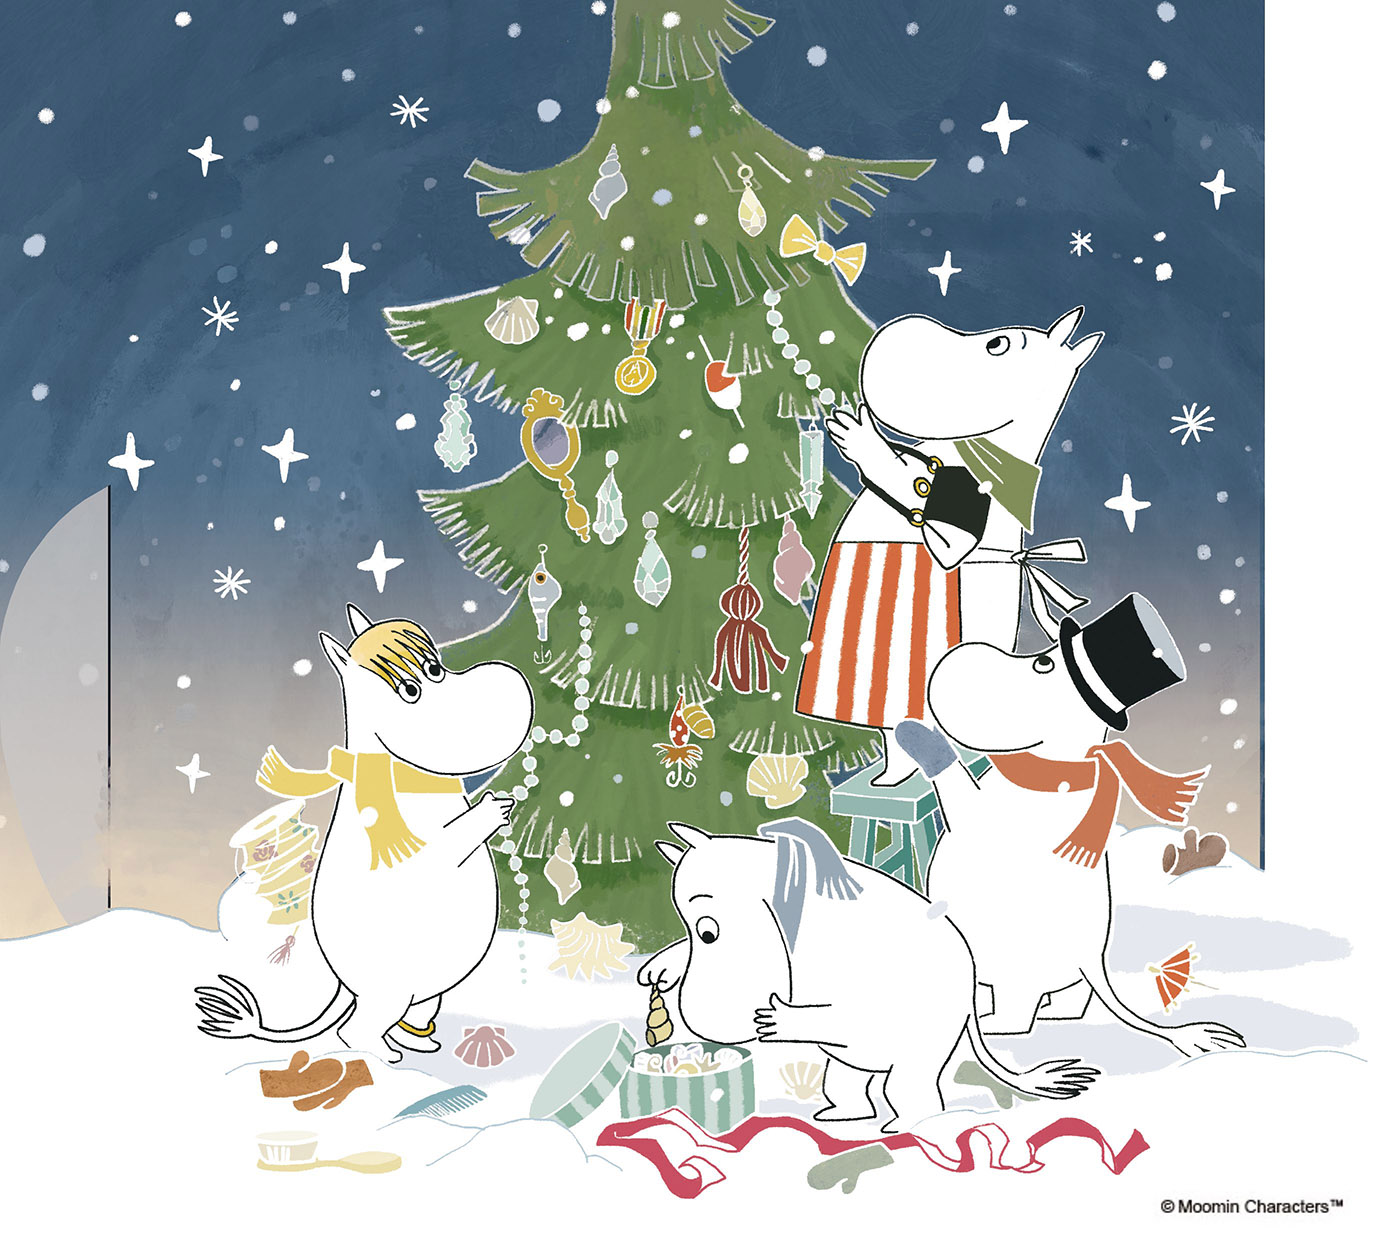 Twitter 上的 ムーミン公式 今日はなんの日 本日は クリスマスツリーの日 普段は冬眠するため冬の様子を知らないムーミン たちですが ある冬ムーミン谷にクリスマスがやってくると起こされ すっかり怖い人だと勘違い しかし もてなそうともみの木を飾り付け